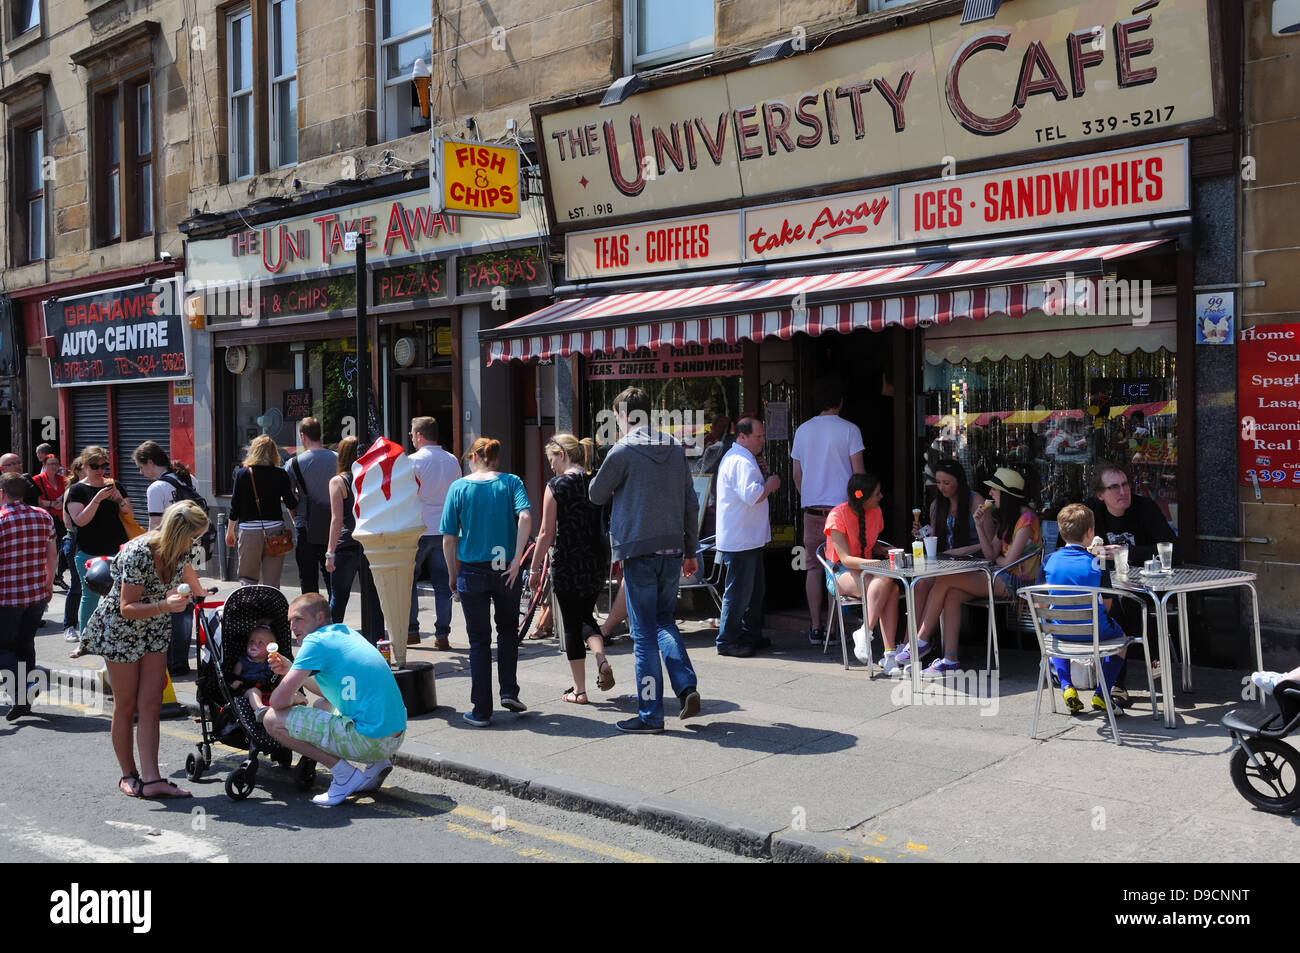 Una strada trafficata scena presso l'Università Café su Byres Road, Glasgow, Scotland, Regno Unito Foto Stock